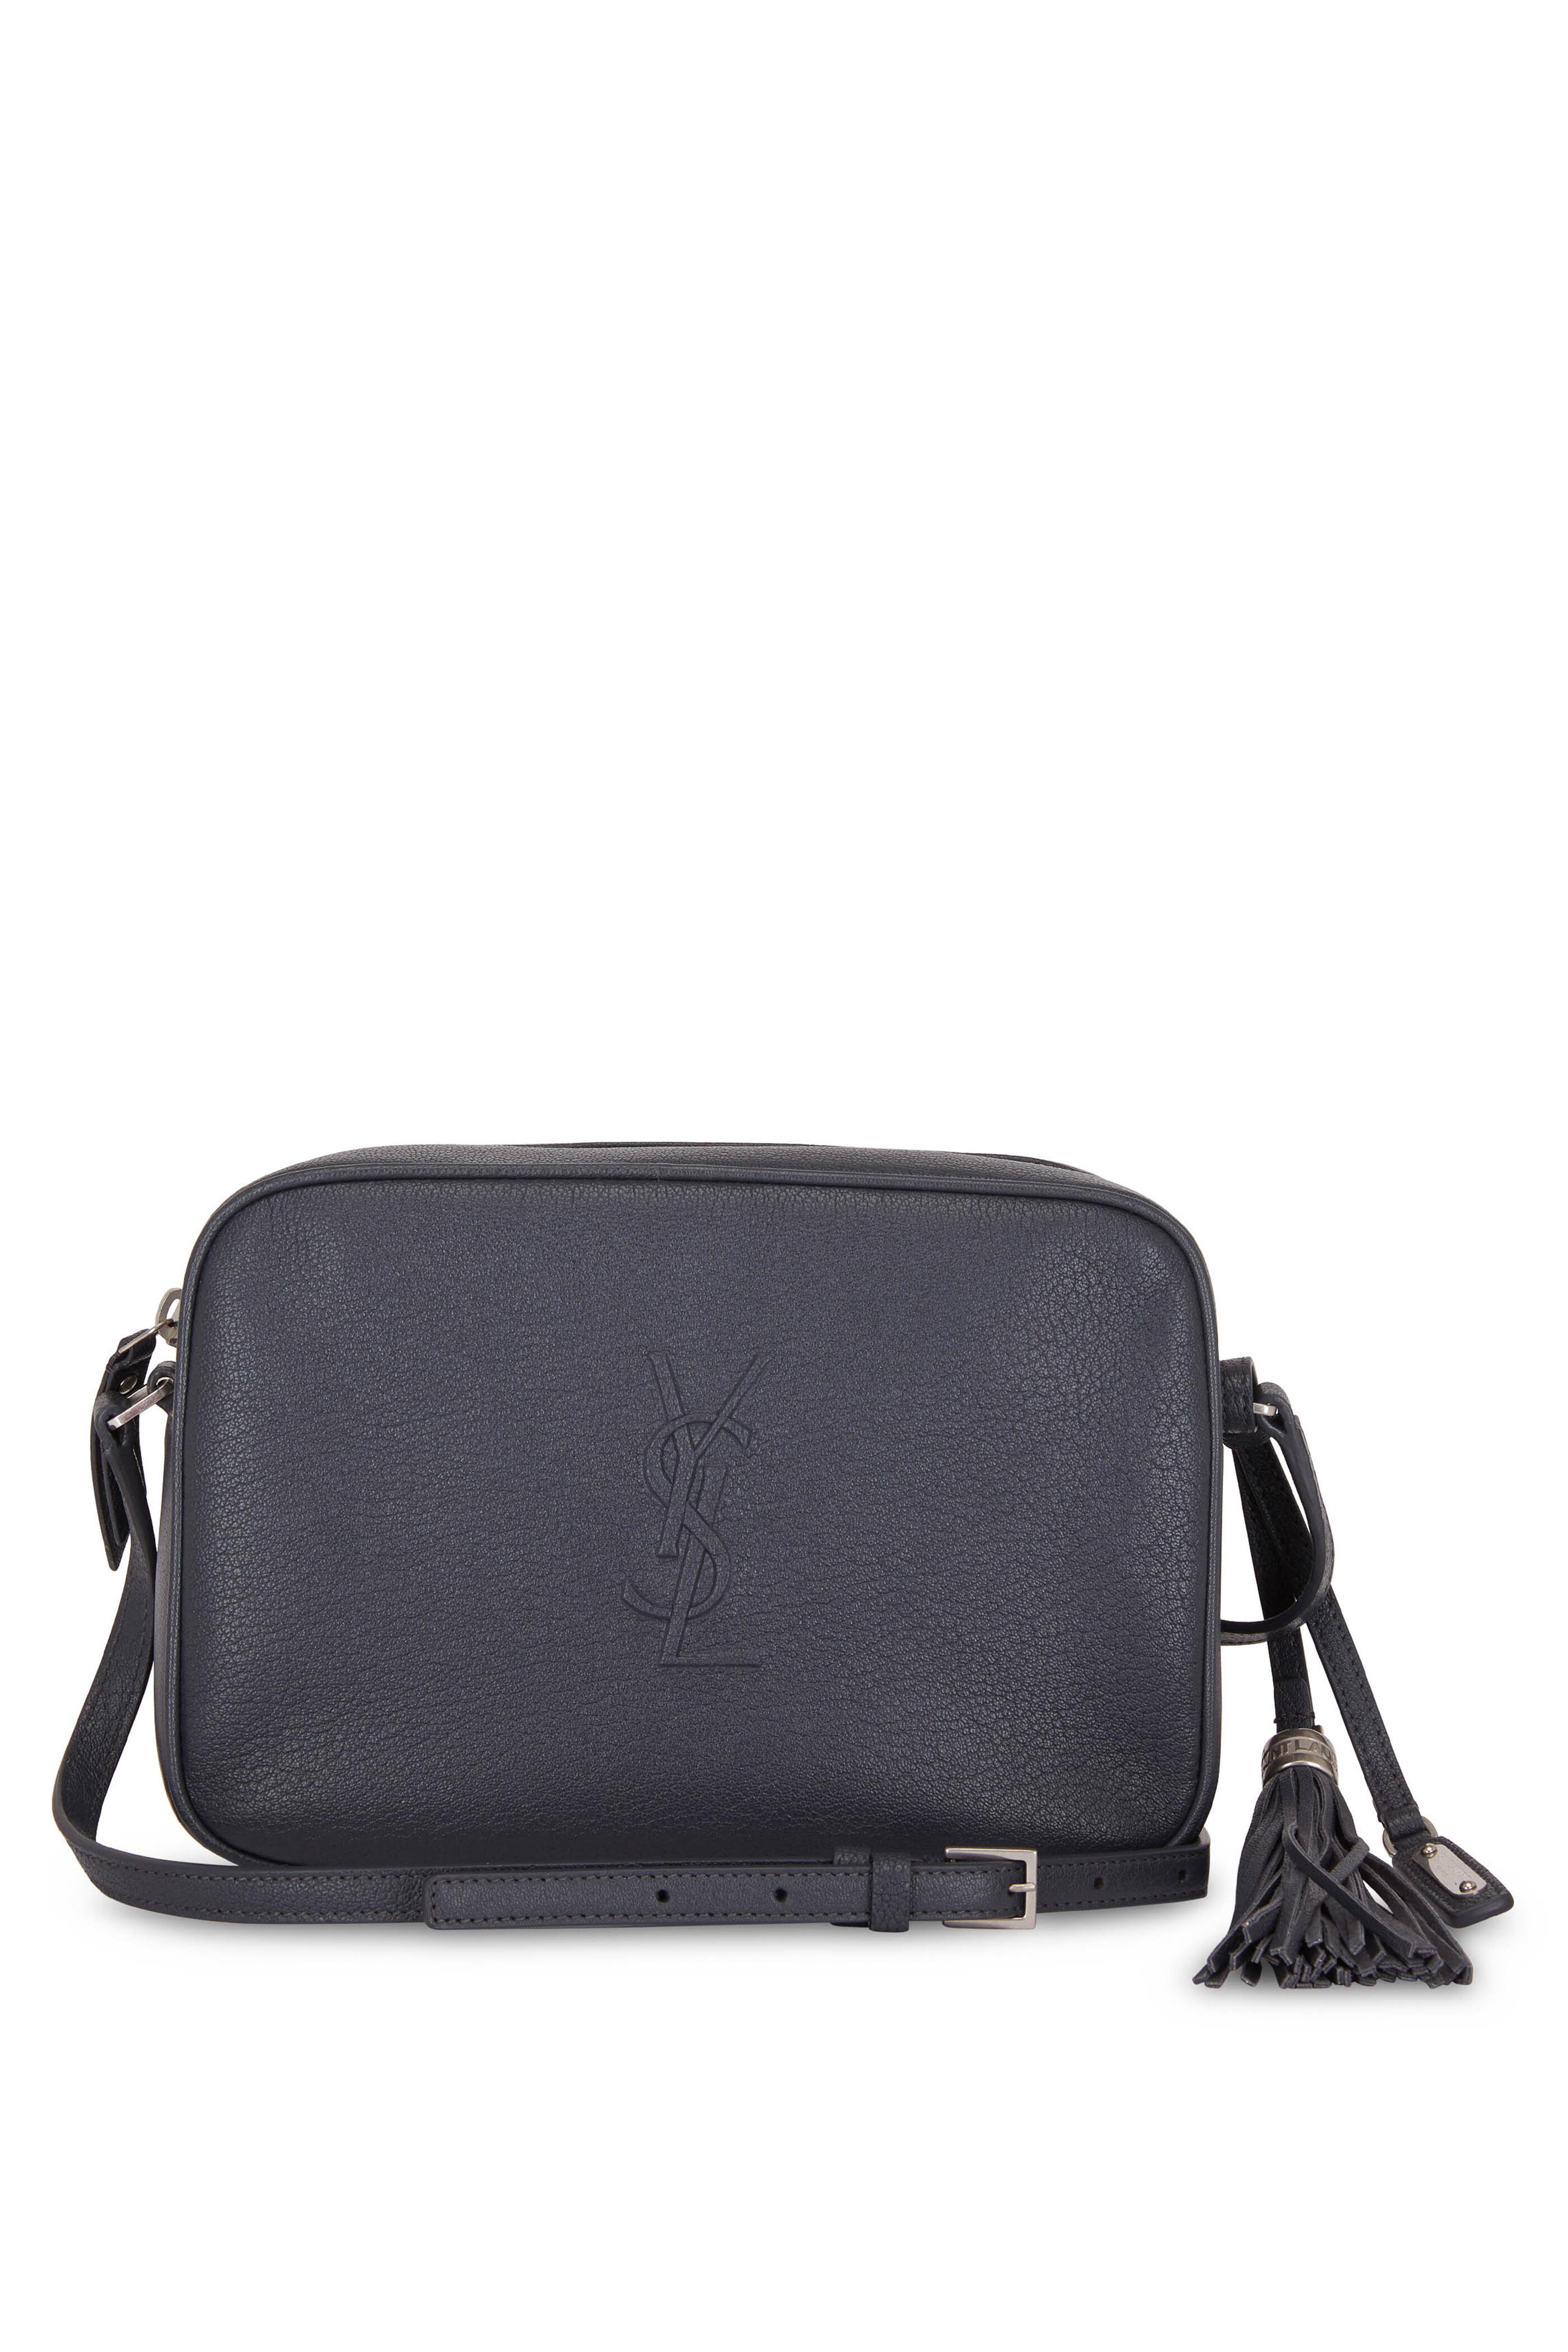 Saint Laurent Small Monogram Lou Camera Bag - Black Crossbody Bags